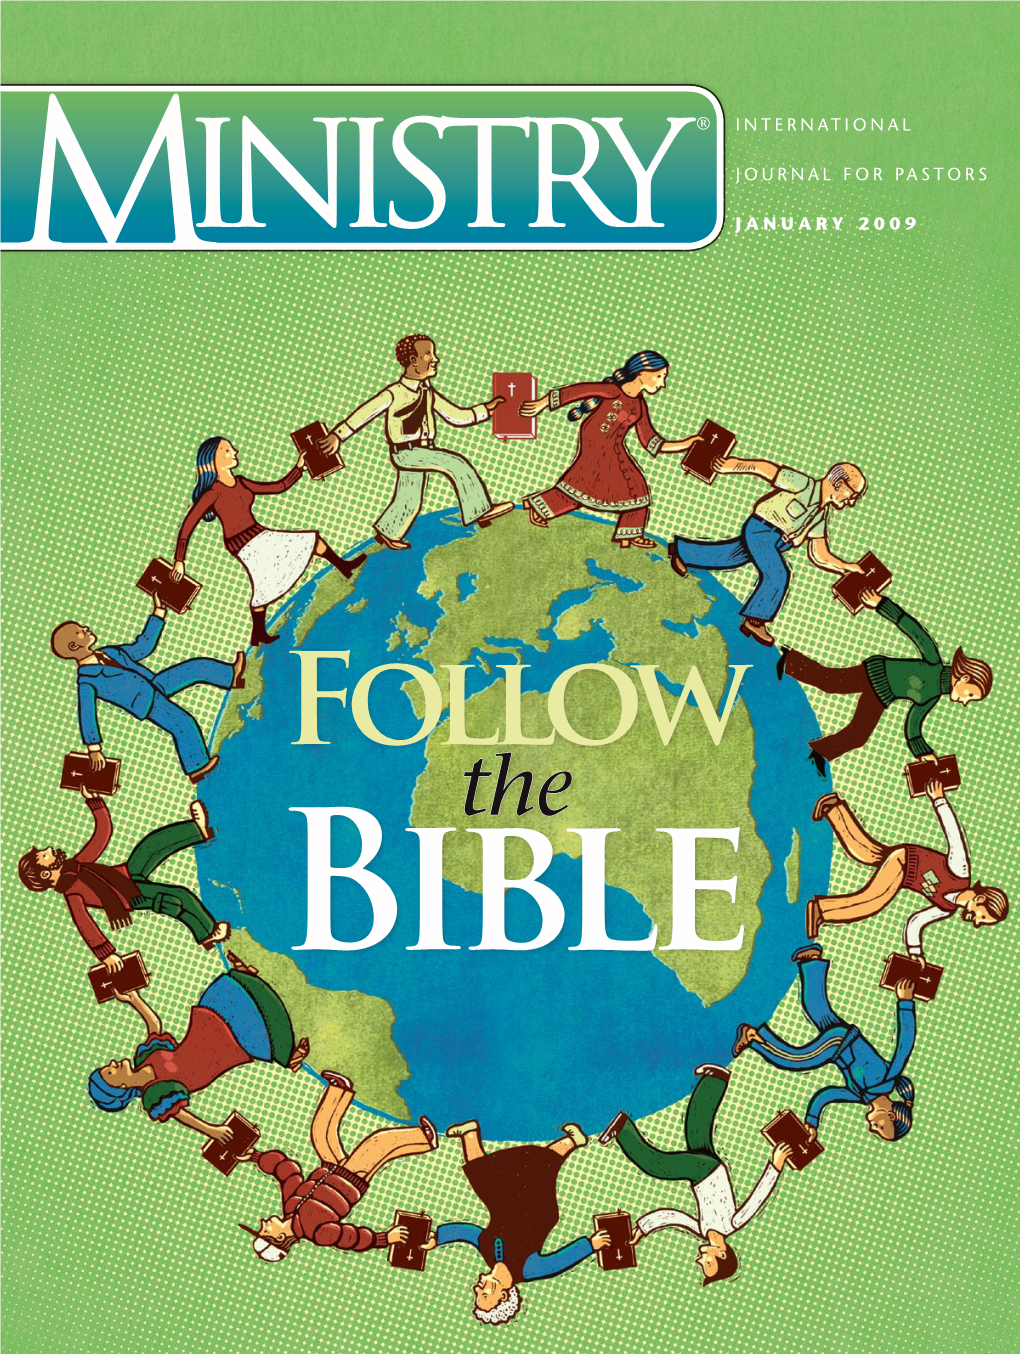 International Journal for Pastors January 2009